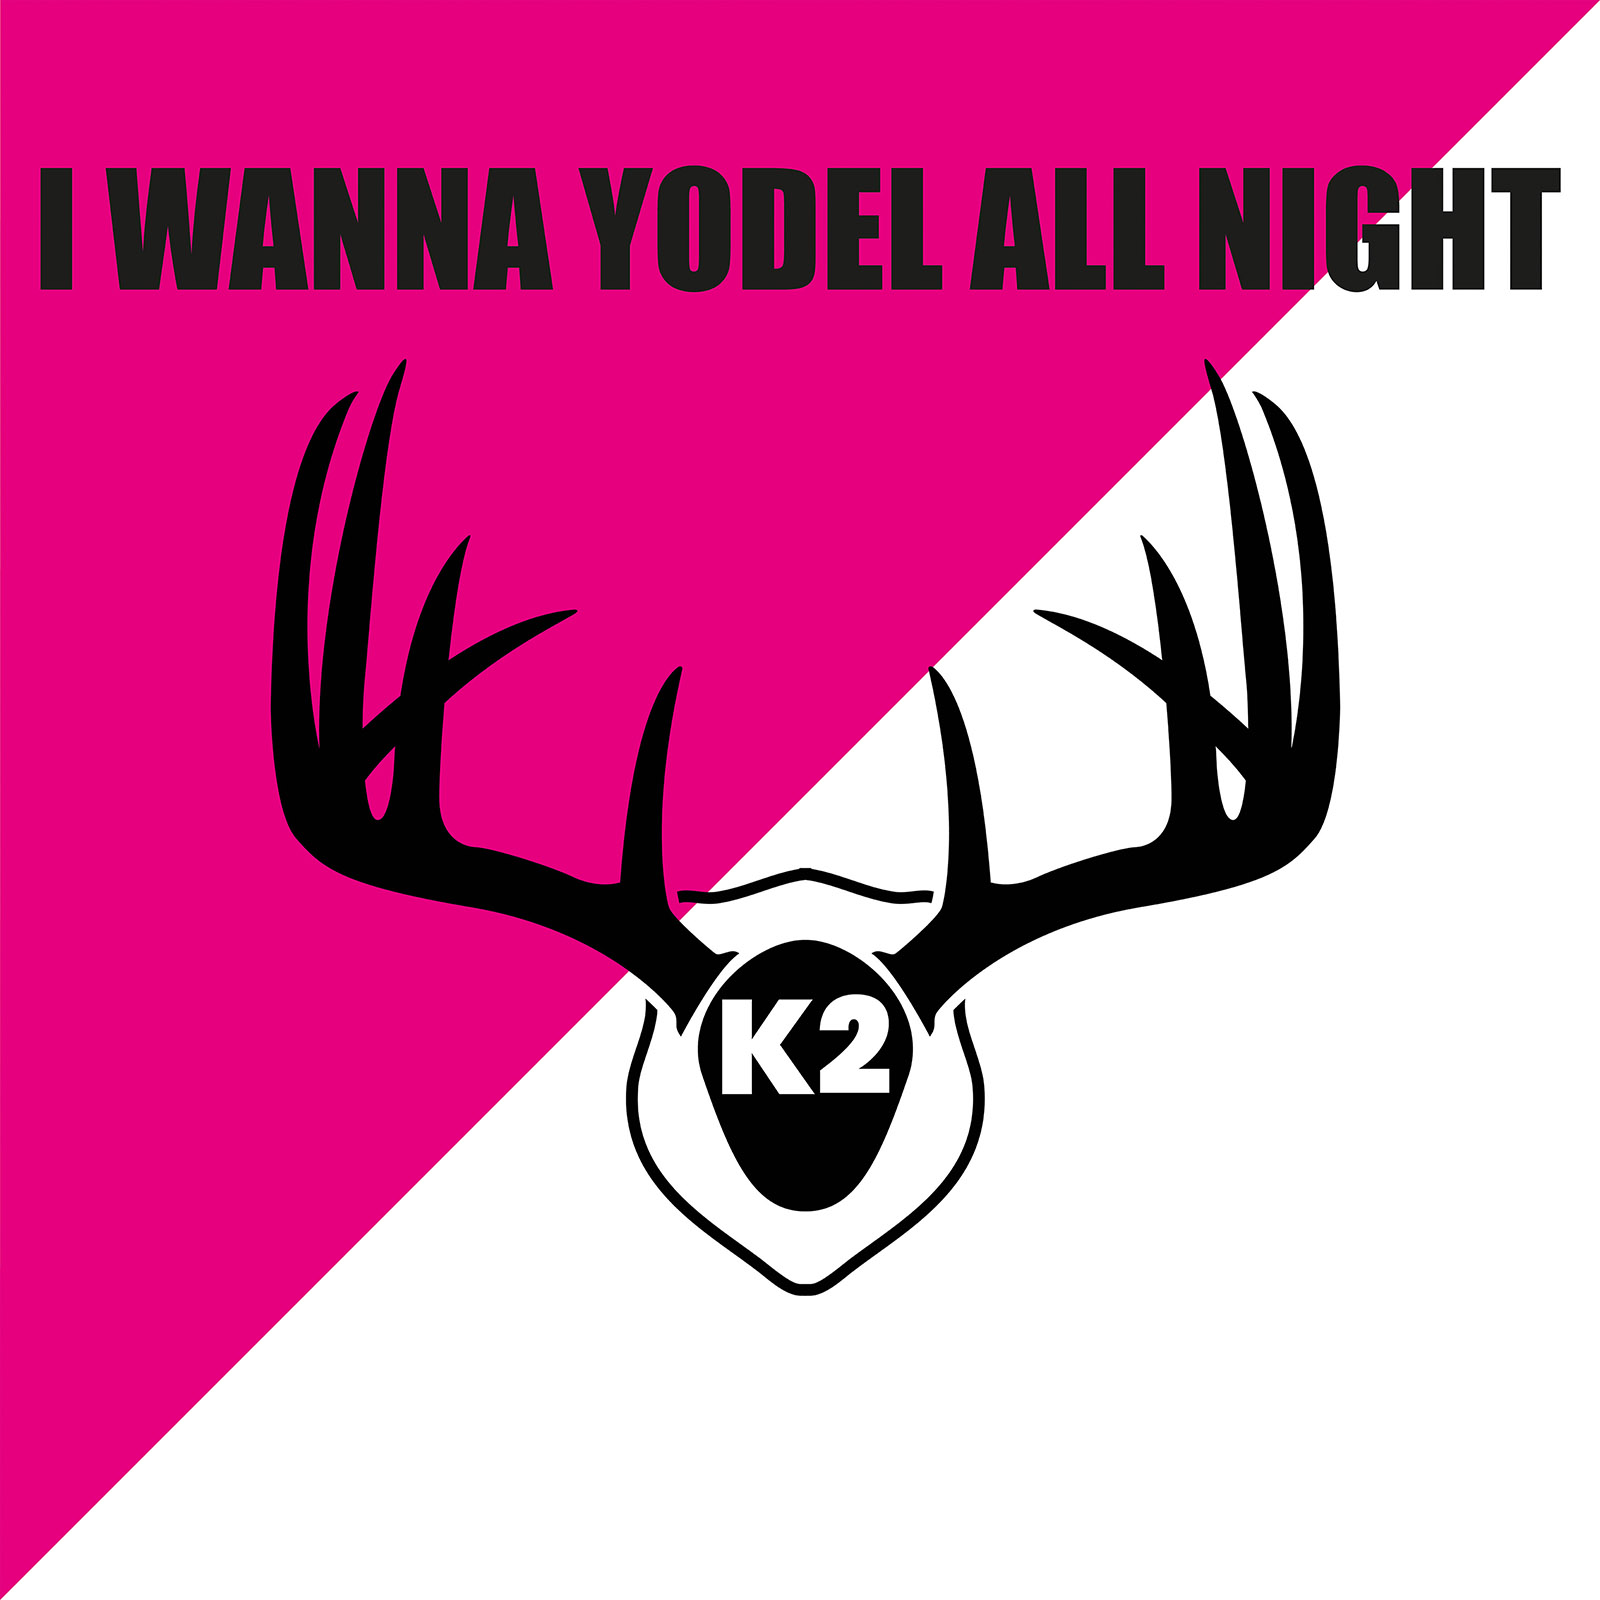 K2 - ”I Wanna Yodel All Night”